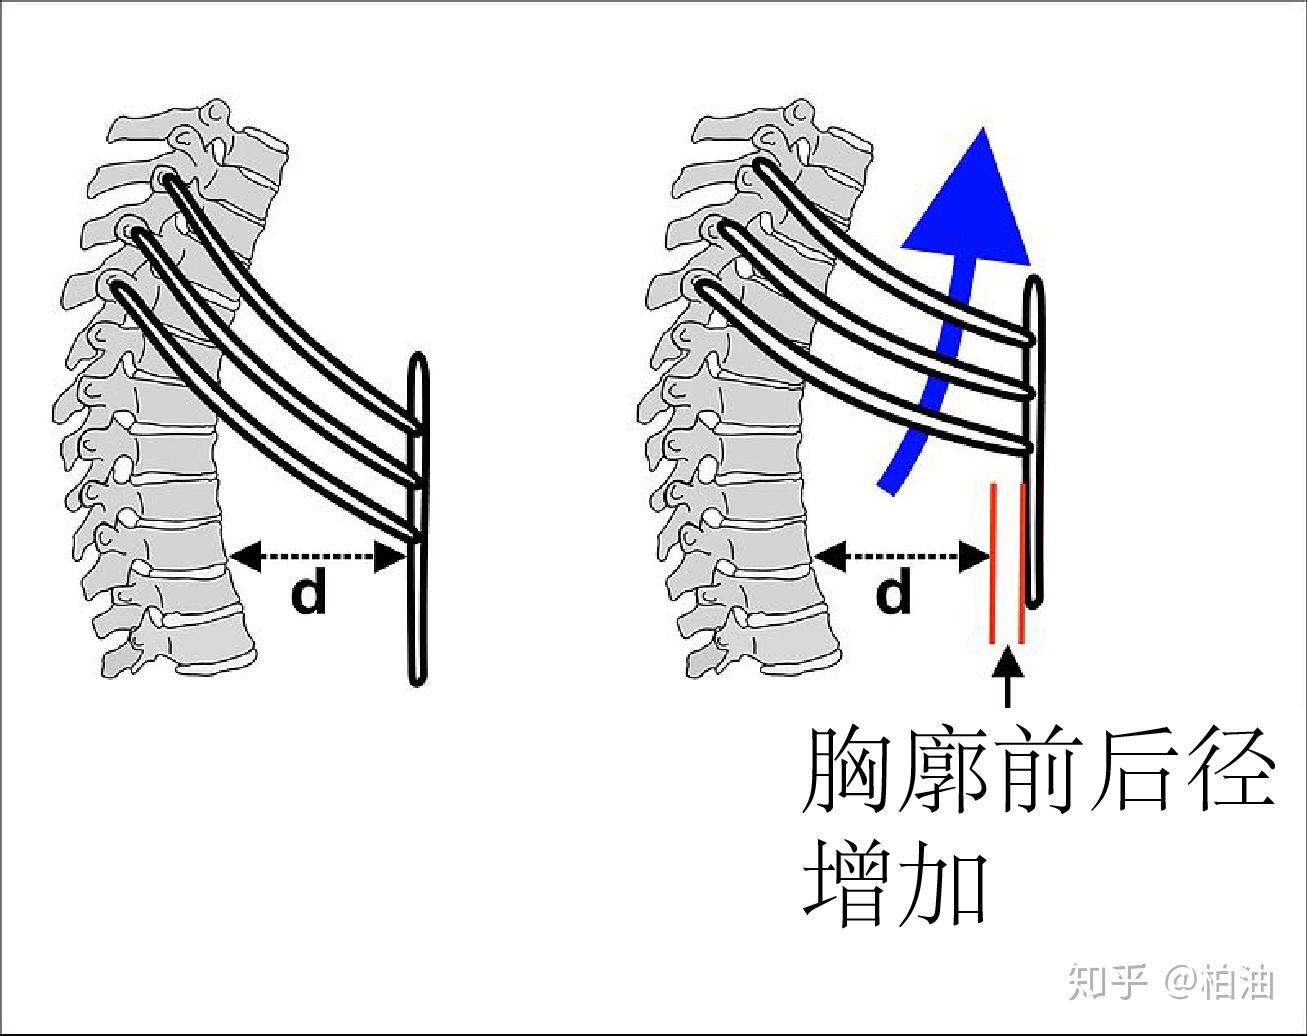 这两种运动的结果是胸廓上抬,同时前后直径增加如下图所示